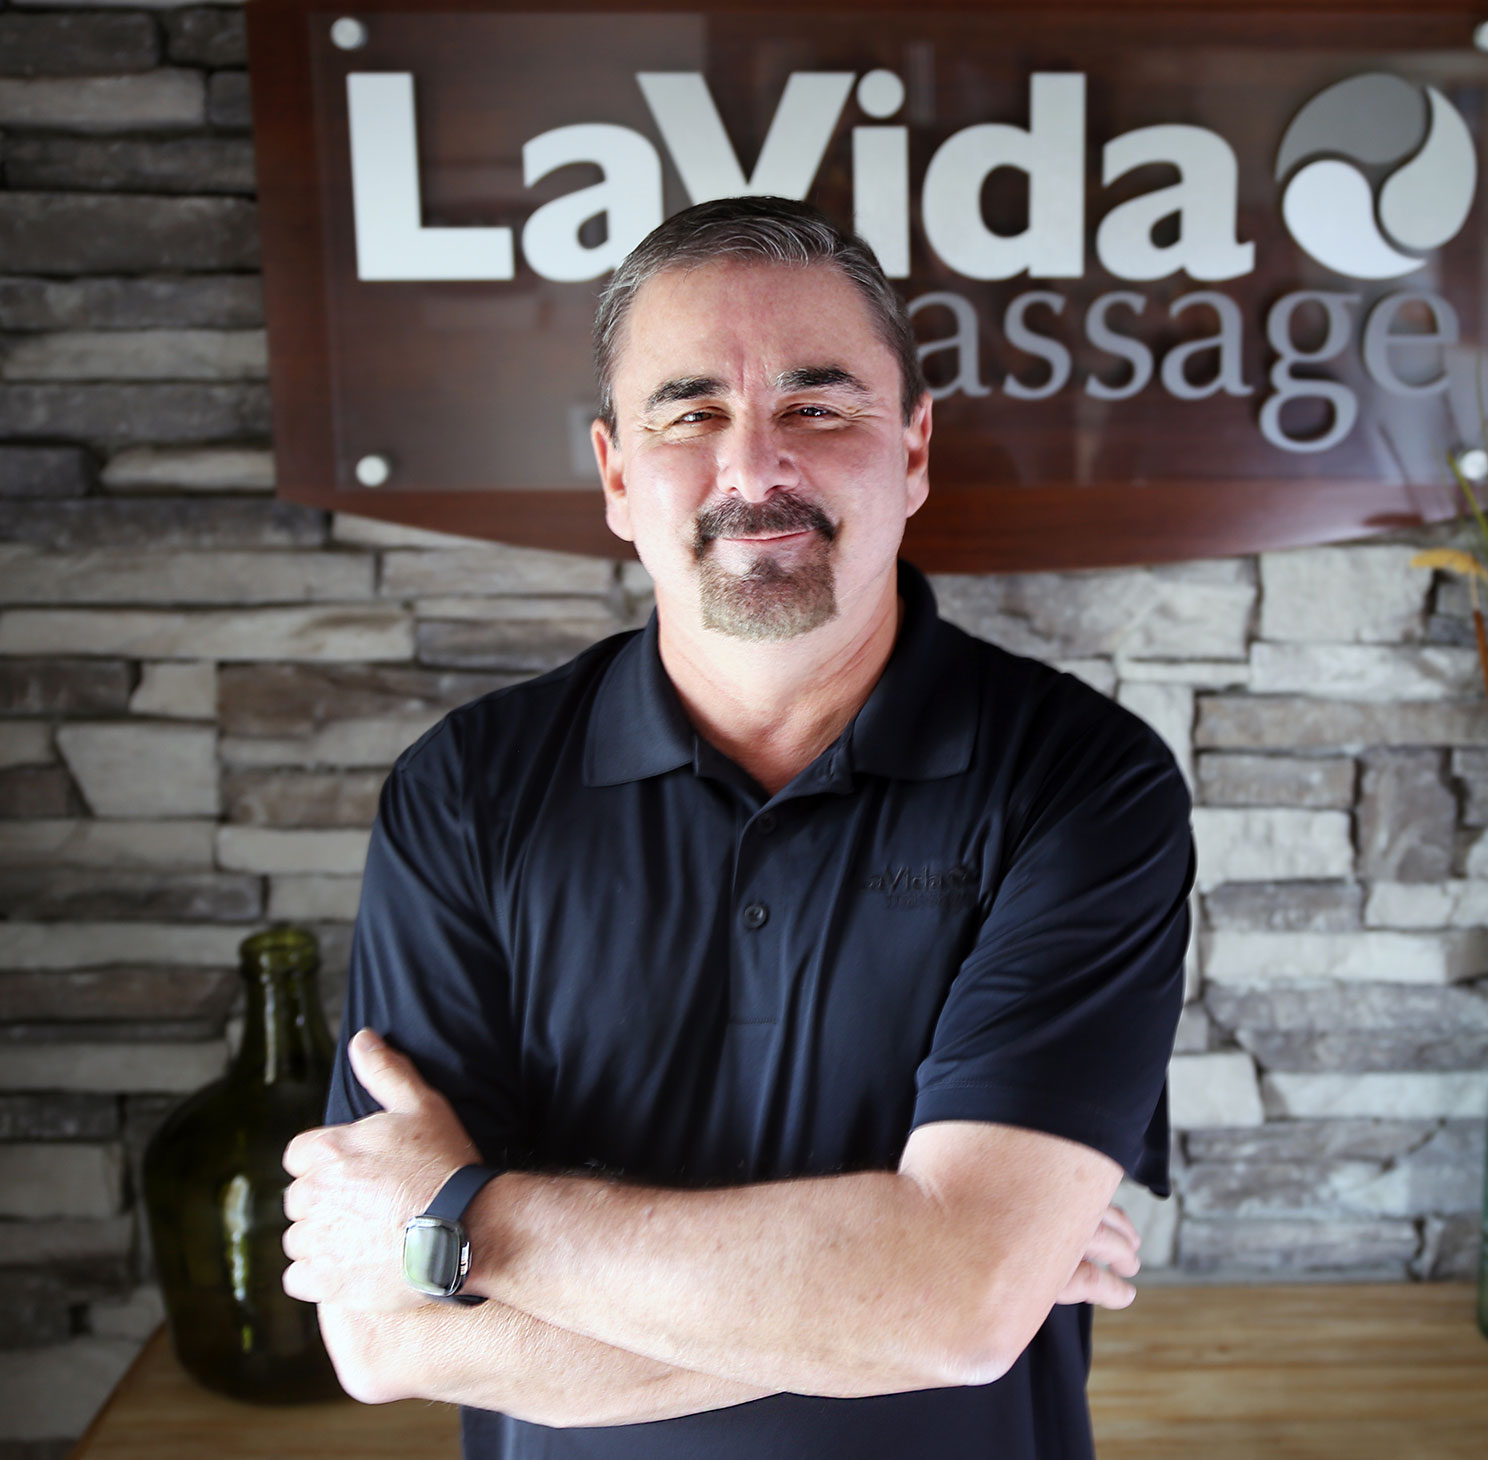 Lavida Massage Franchise